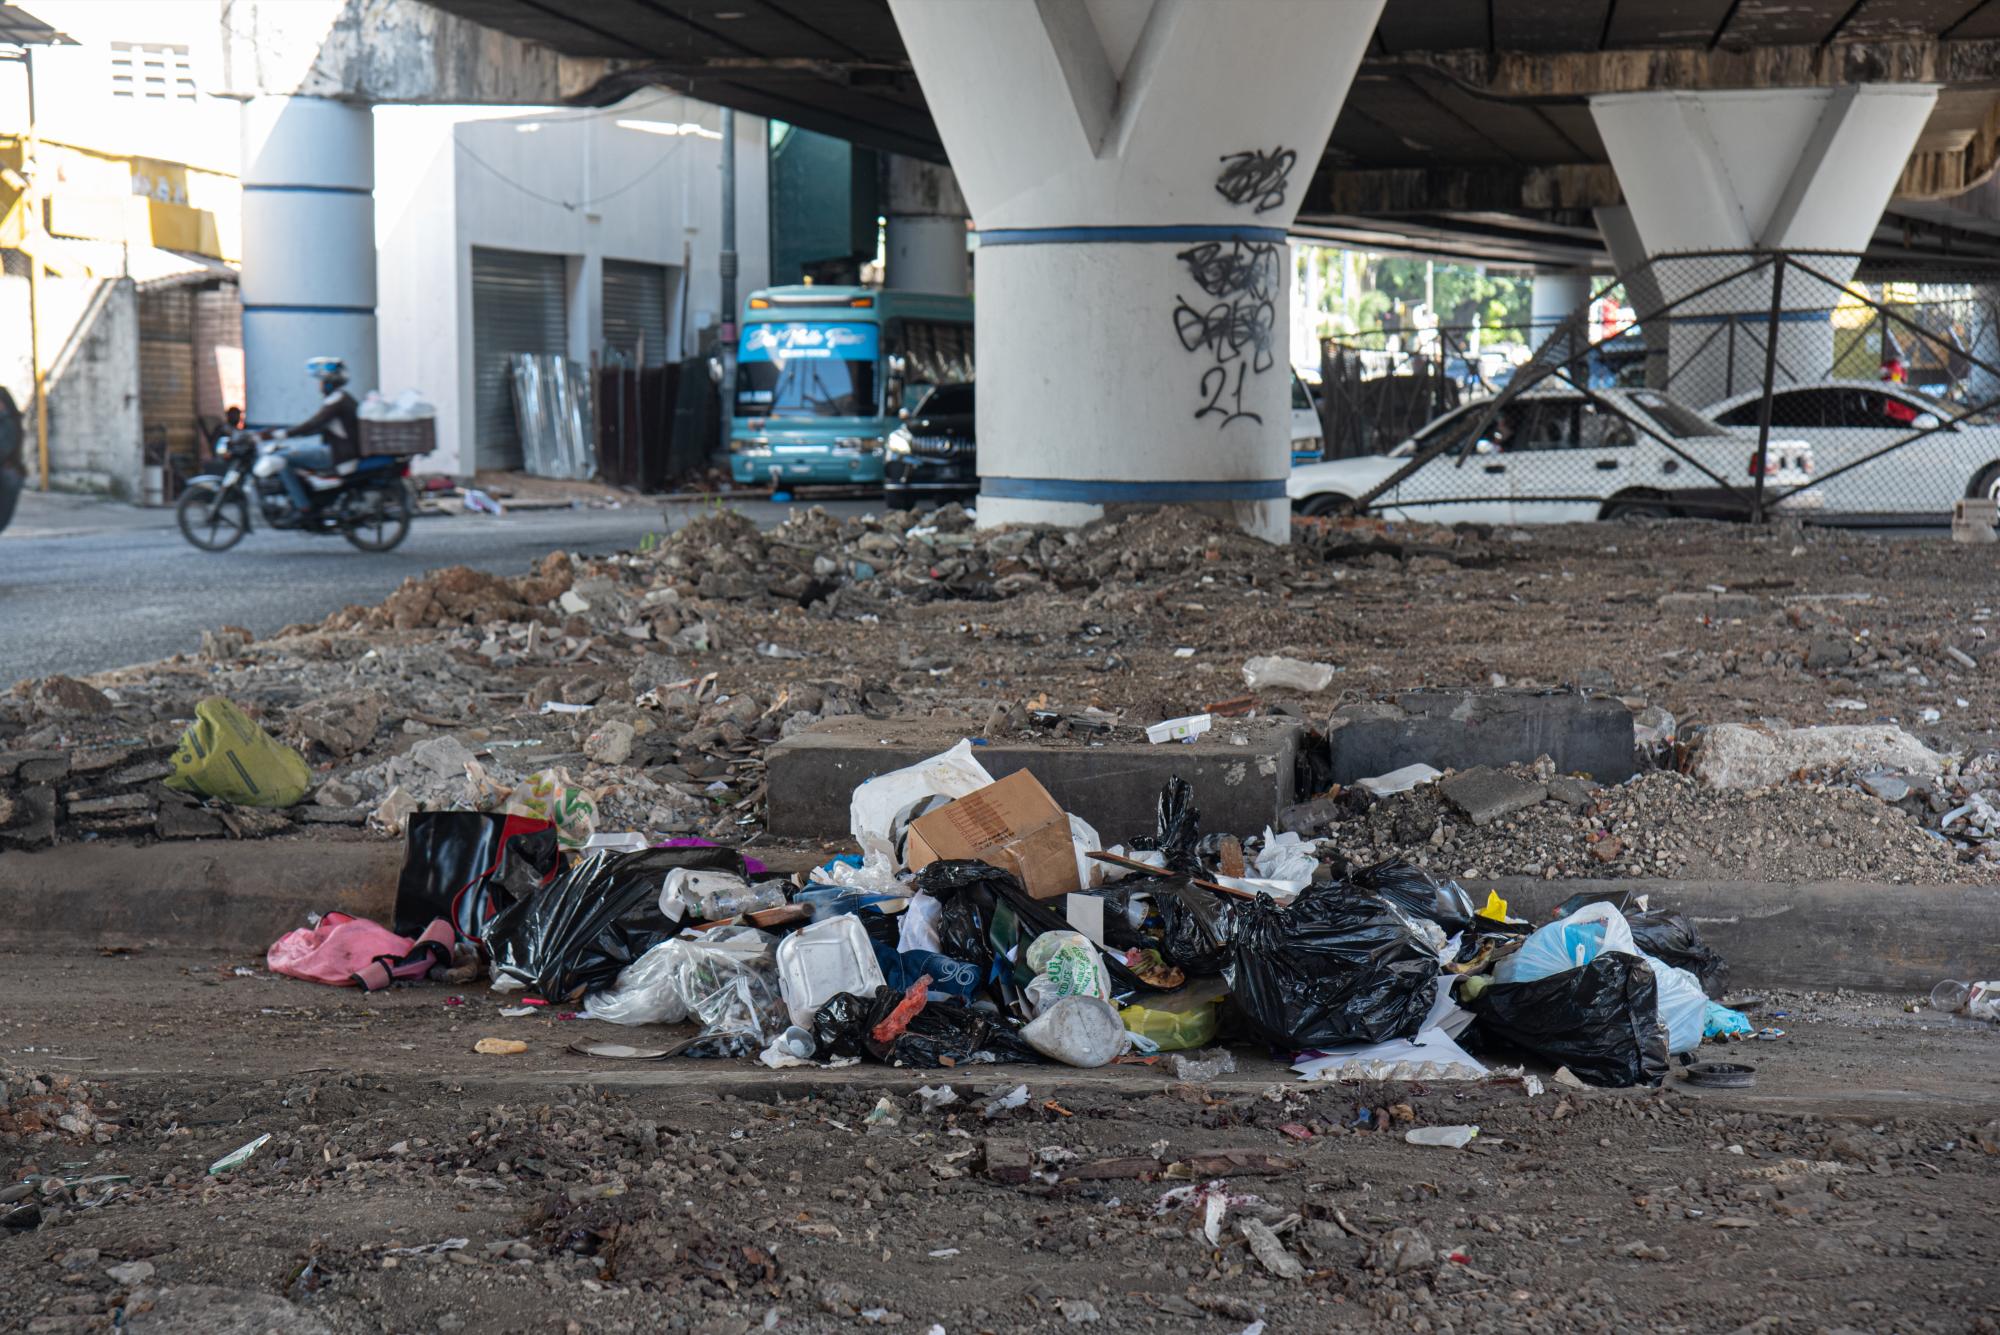 En algunos tramos la basura se acumula ante la vista de los transeúntes (Foto: Neal Cruz)